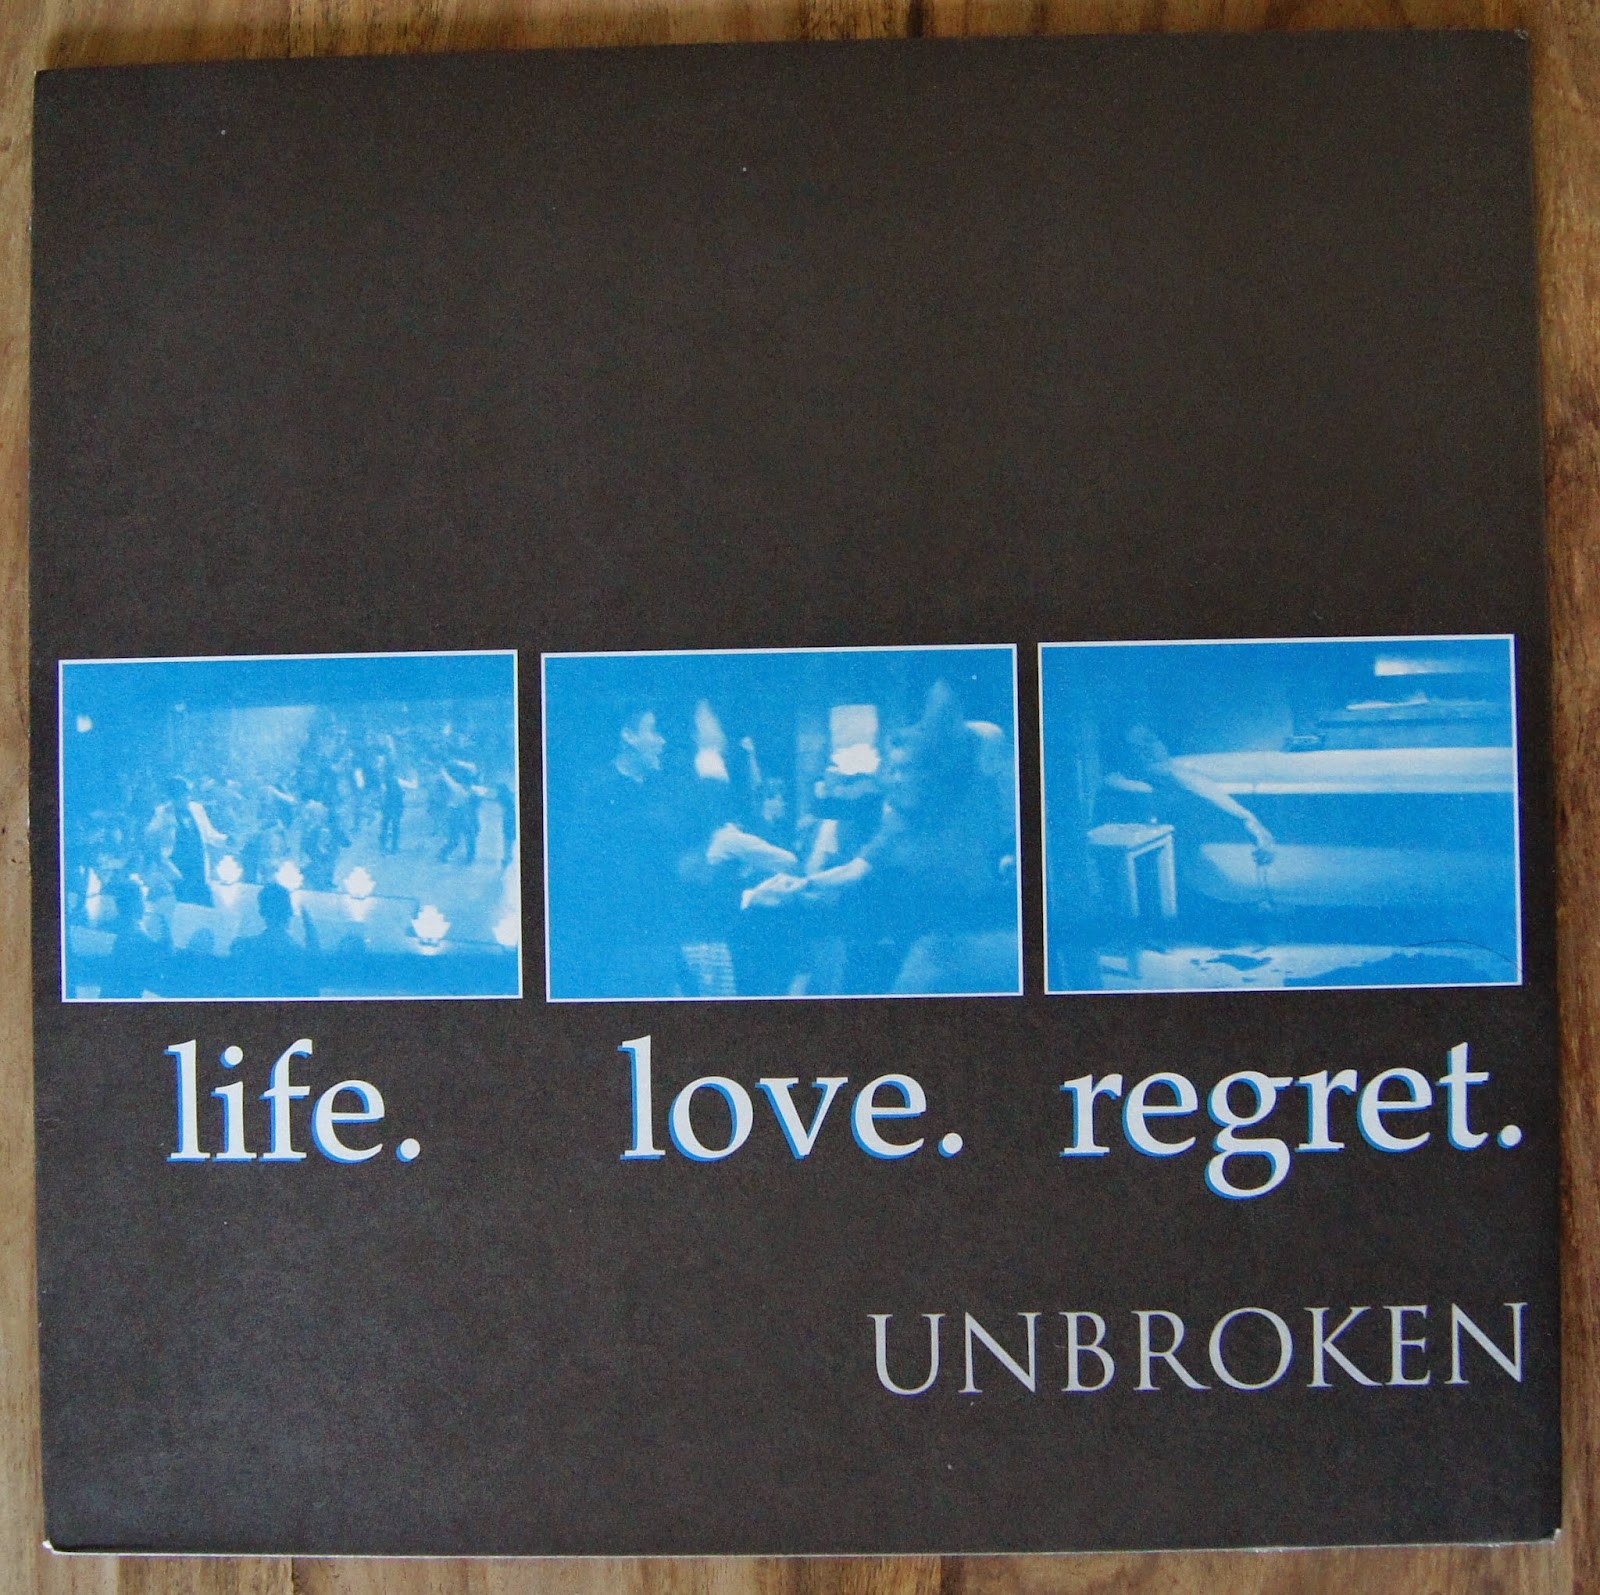 Life. Love. Unbroken.: LIFE. LOVE. REGRET.